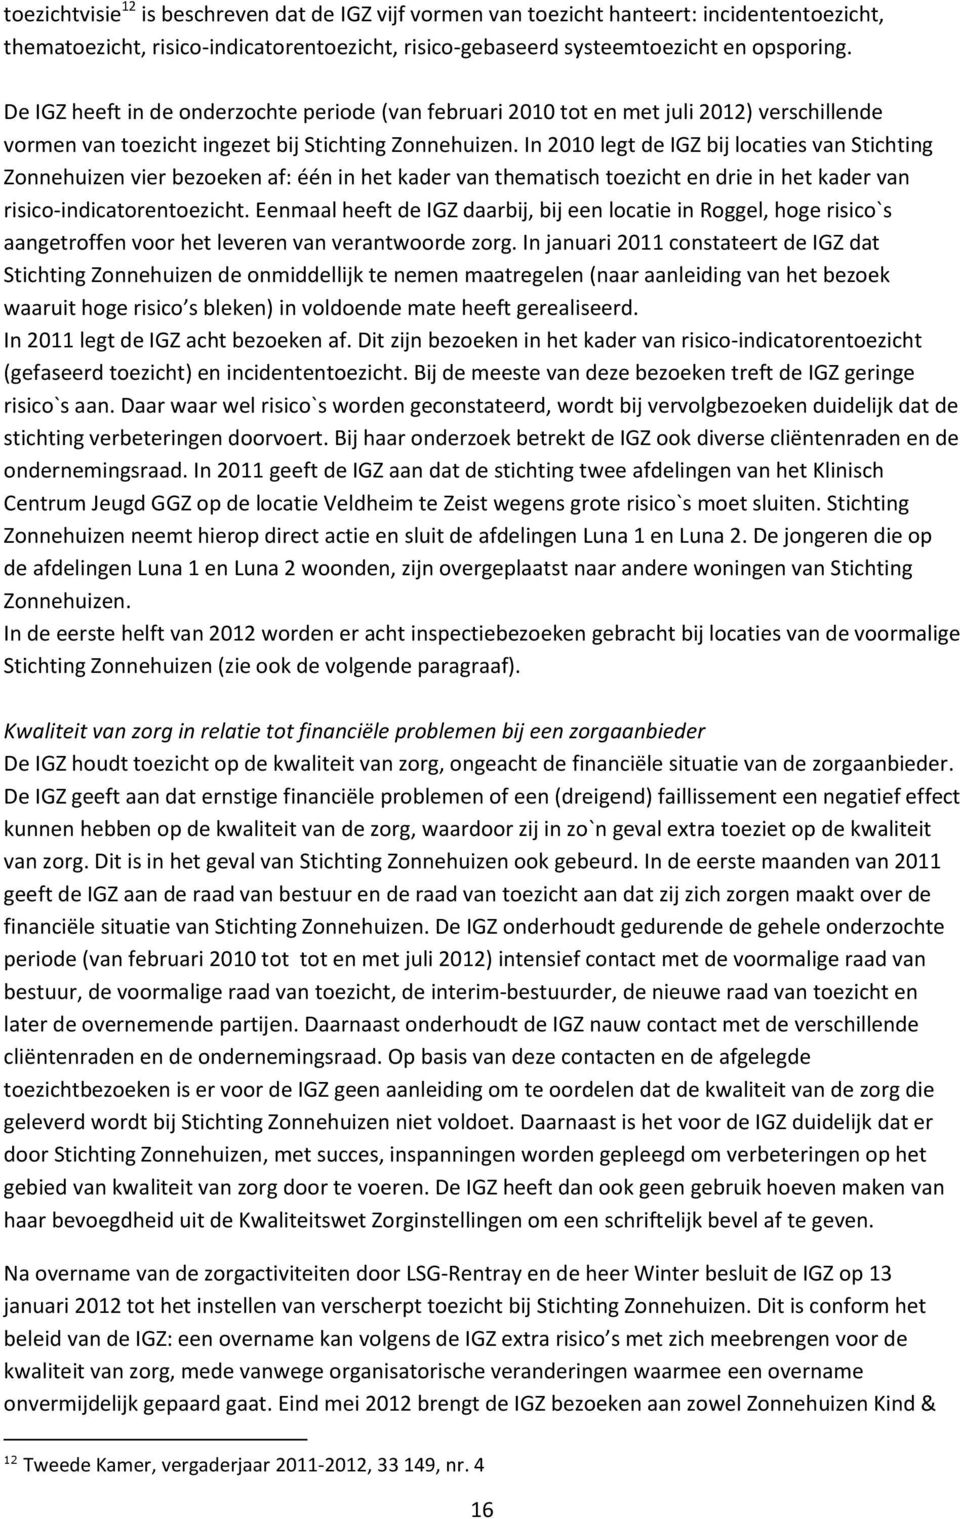 In 2010 legt de IGZ bij locaties van Stichting Zonnehuizen vier bezoeken af: één in het kader van thematisch toezicht en drie in het kader van risico-indicatorentoezicht.